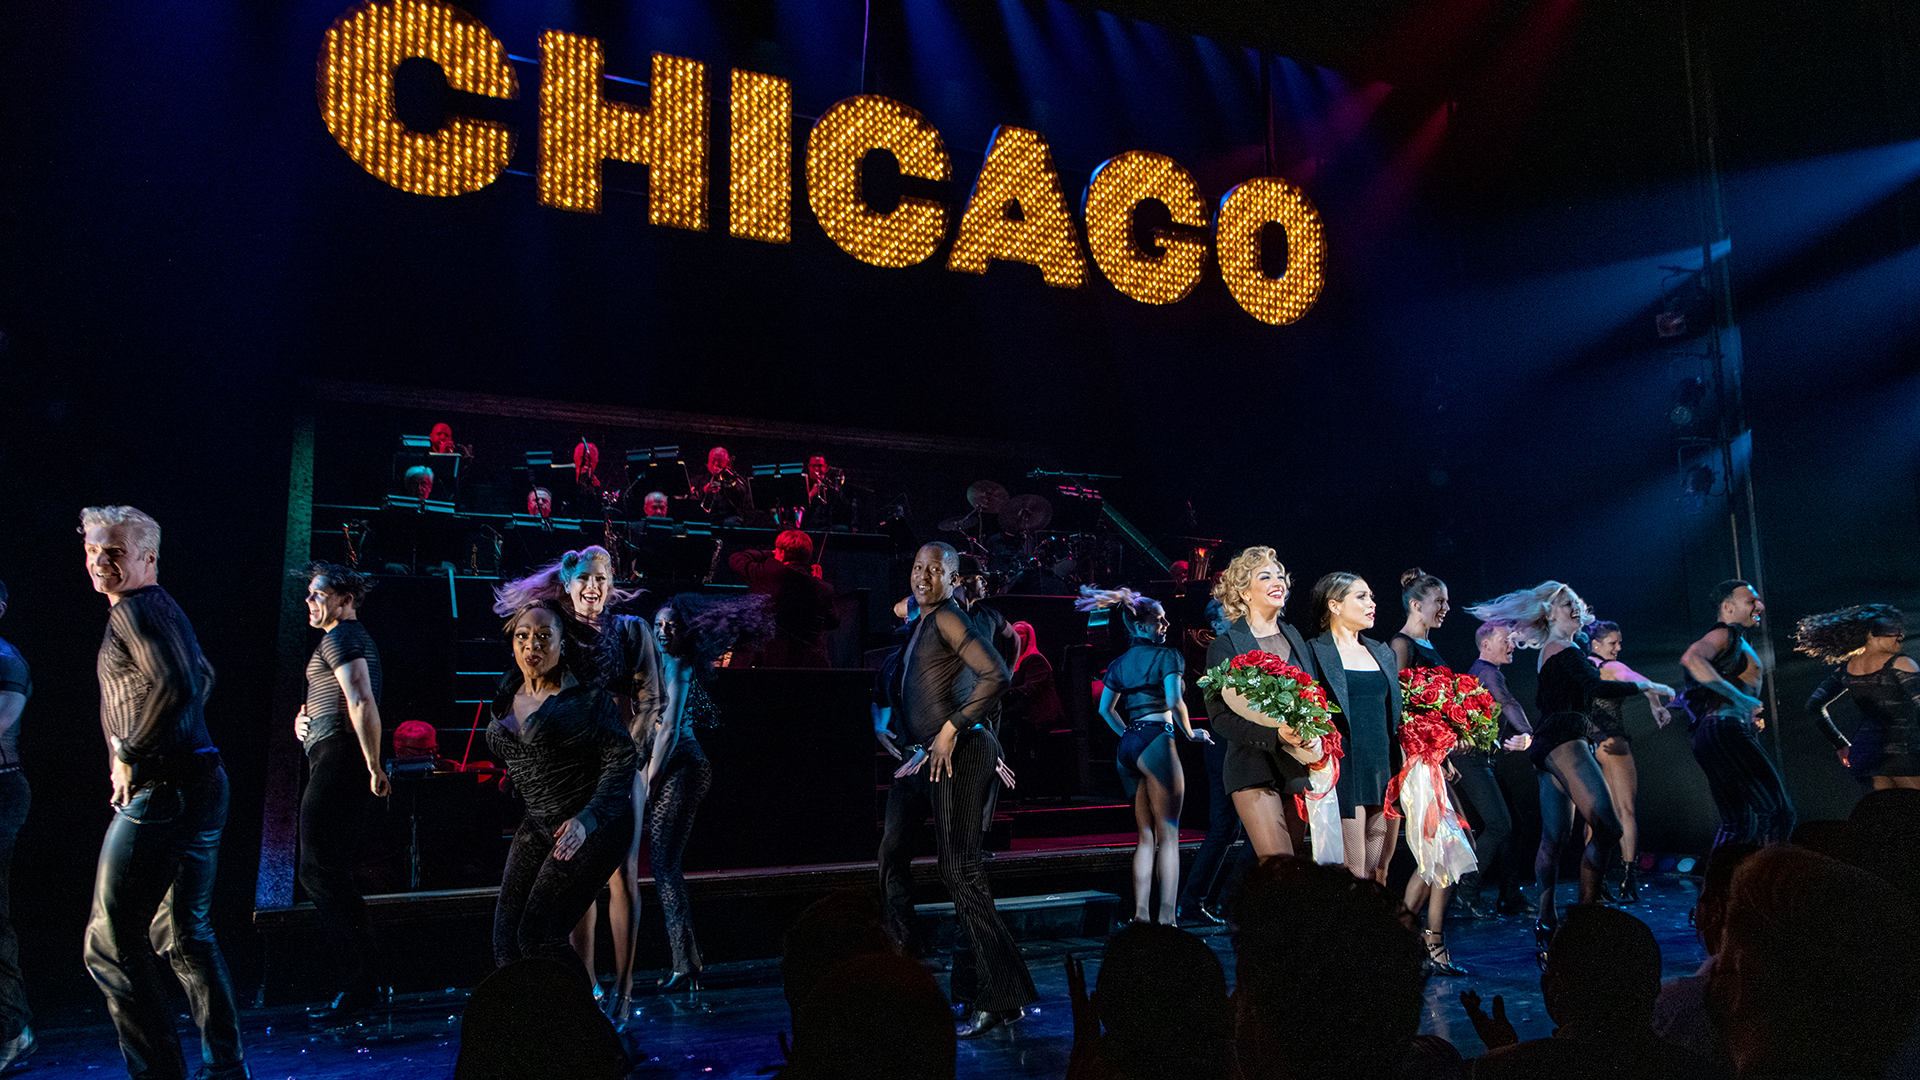 “Chicago” cumple 25 años en la cartelera de Broadway y habrá una función especial a modo de celebración